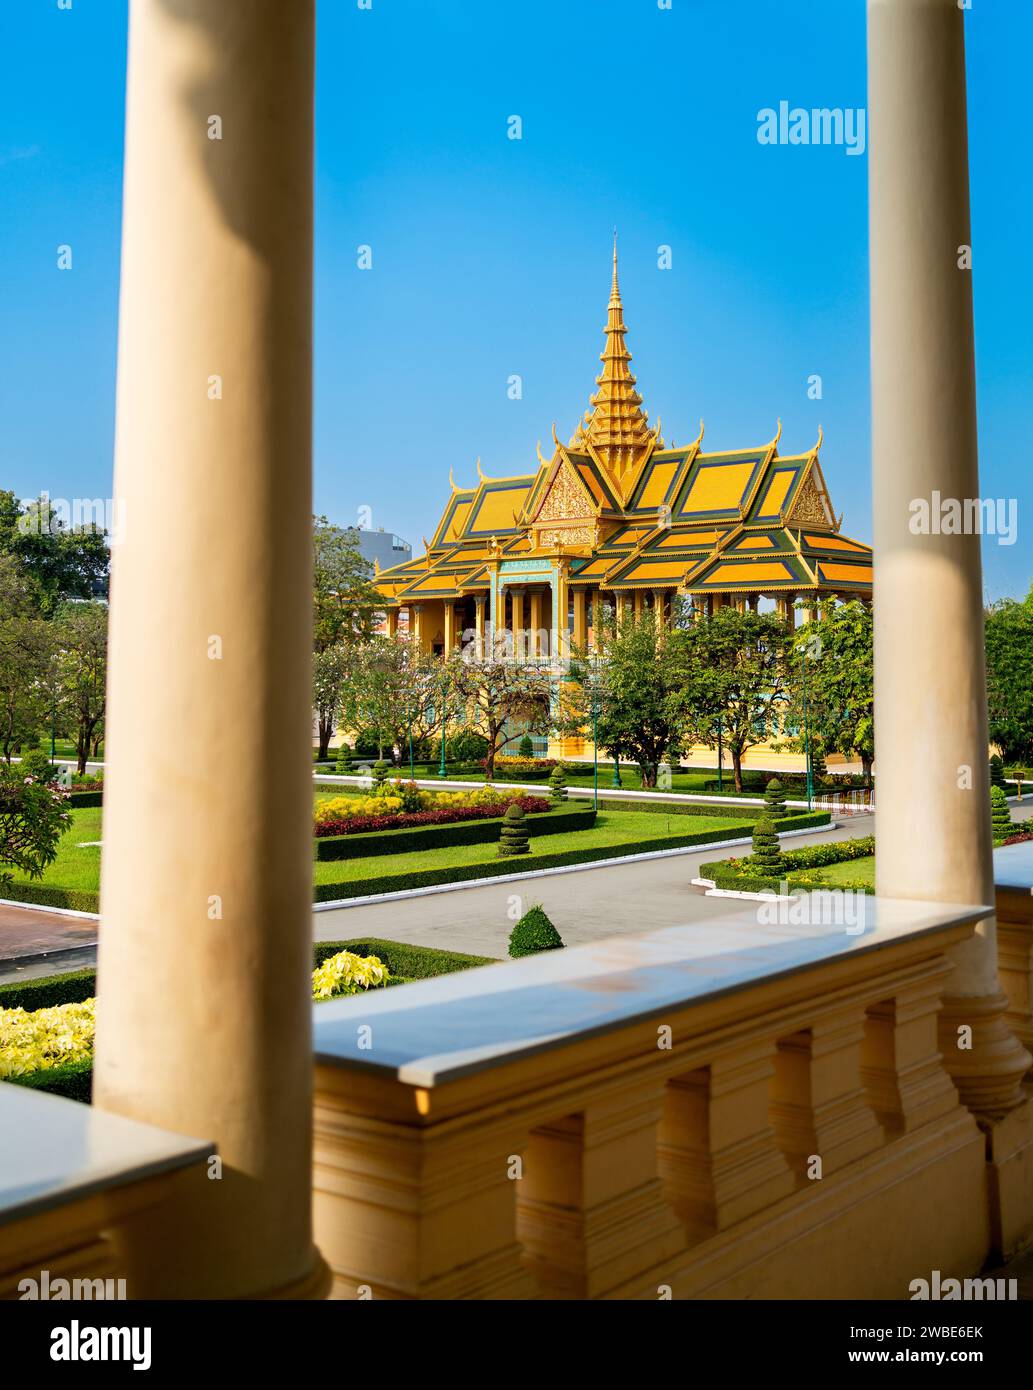 Phnom Penh, Cambodge. Palais royal, Pavillon clair de lune. Voyage et tourisme en Asie. Point de repère de la culture bouddhiste. Attraction touristique dans la capitale. Banque D'Images